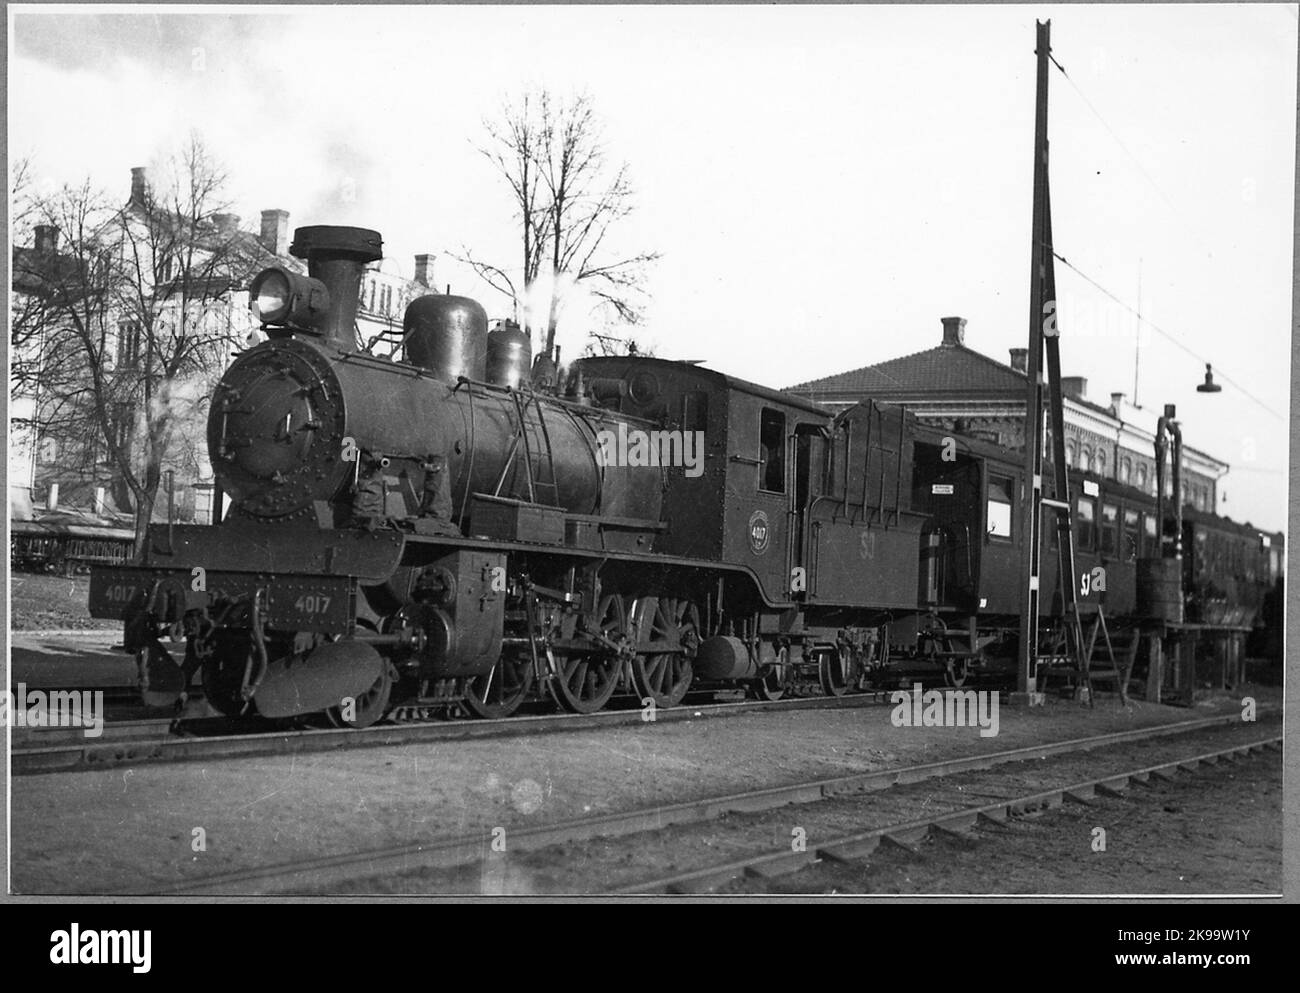 State Railways, SJ L3T 4017. Stock Photo